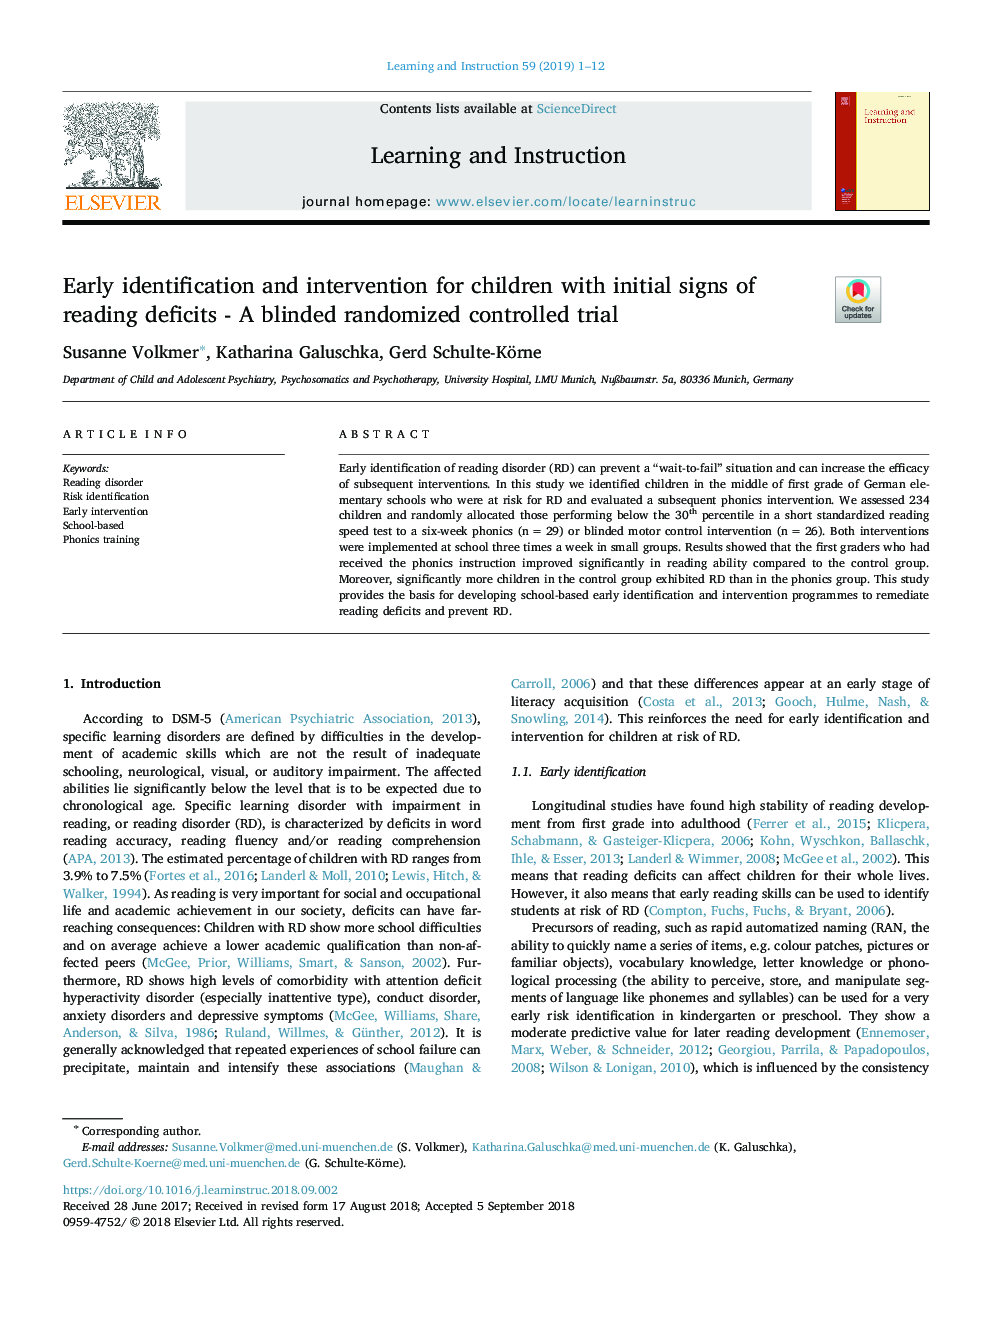 شناسایی و مداخله زودرس برای کودکان مبتلا به نشانه های اولیه نارسایی خواندن - یک کارآزمایی بالینی تصادفی کور